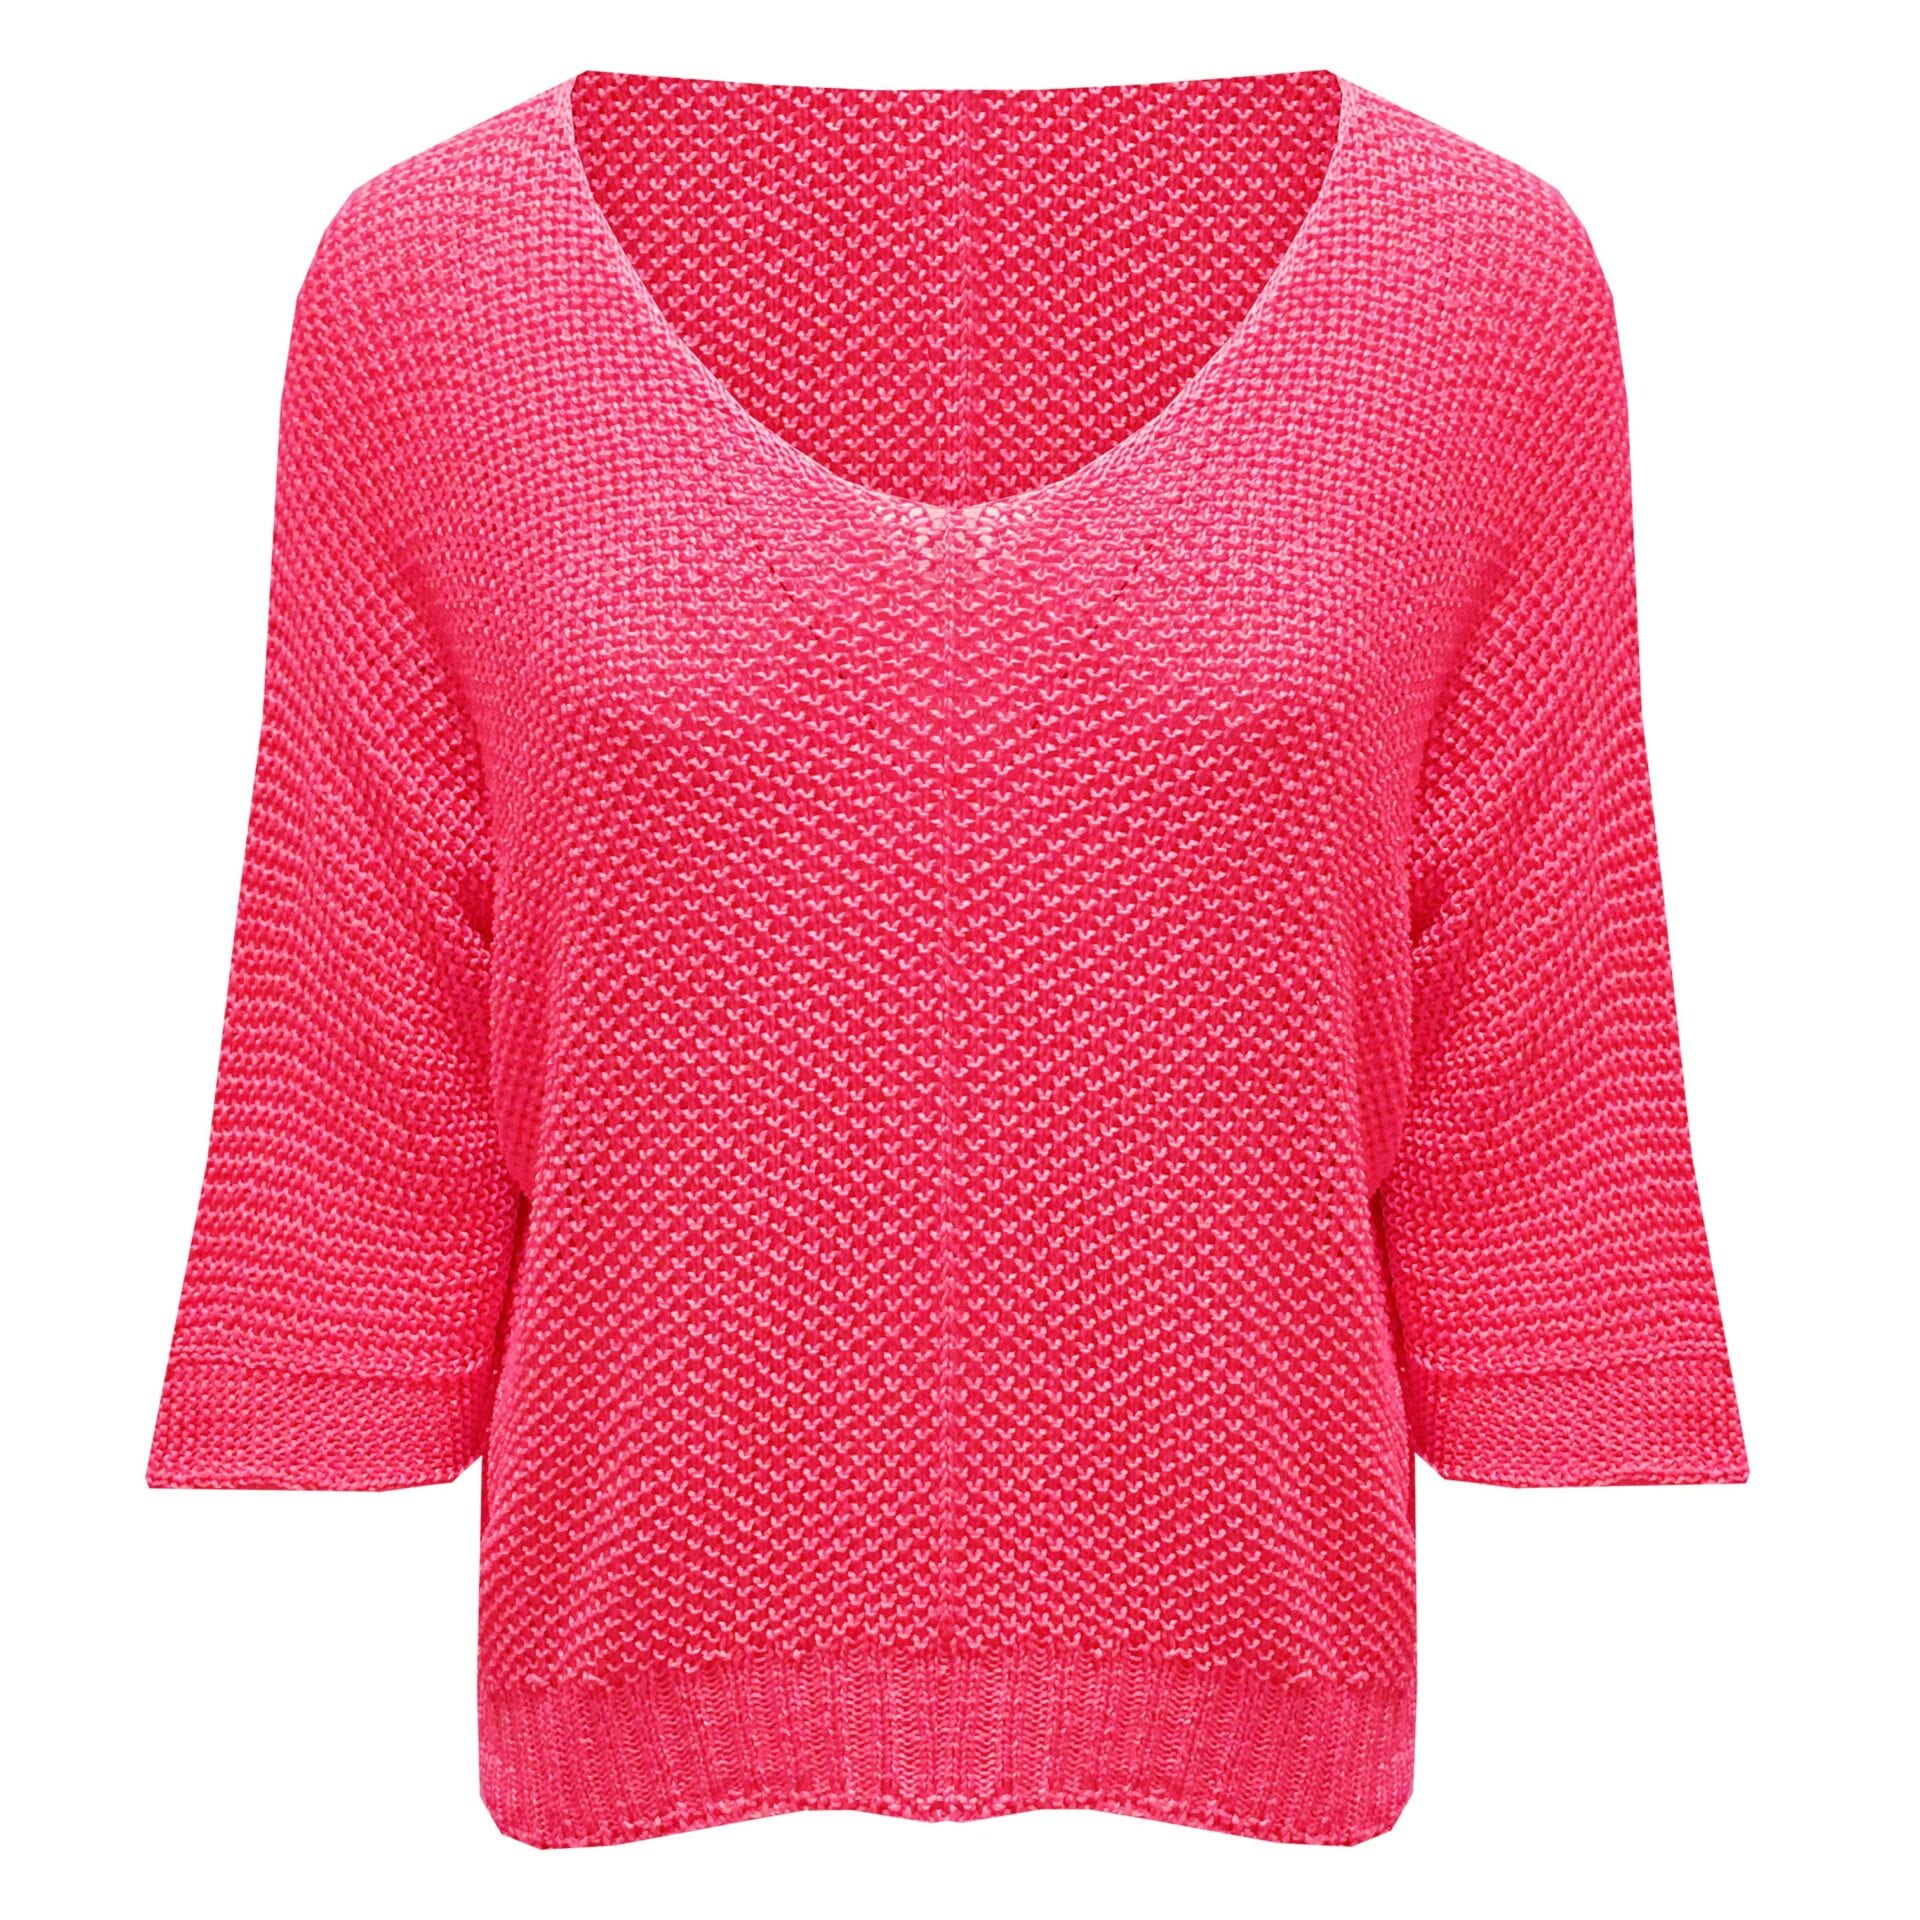 Sweater Opengewerkt in verschillende kleuren 7010